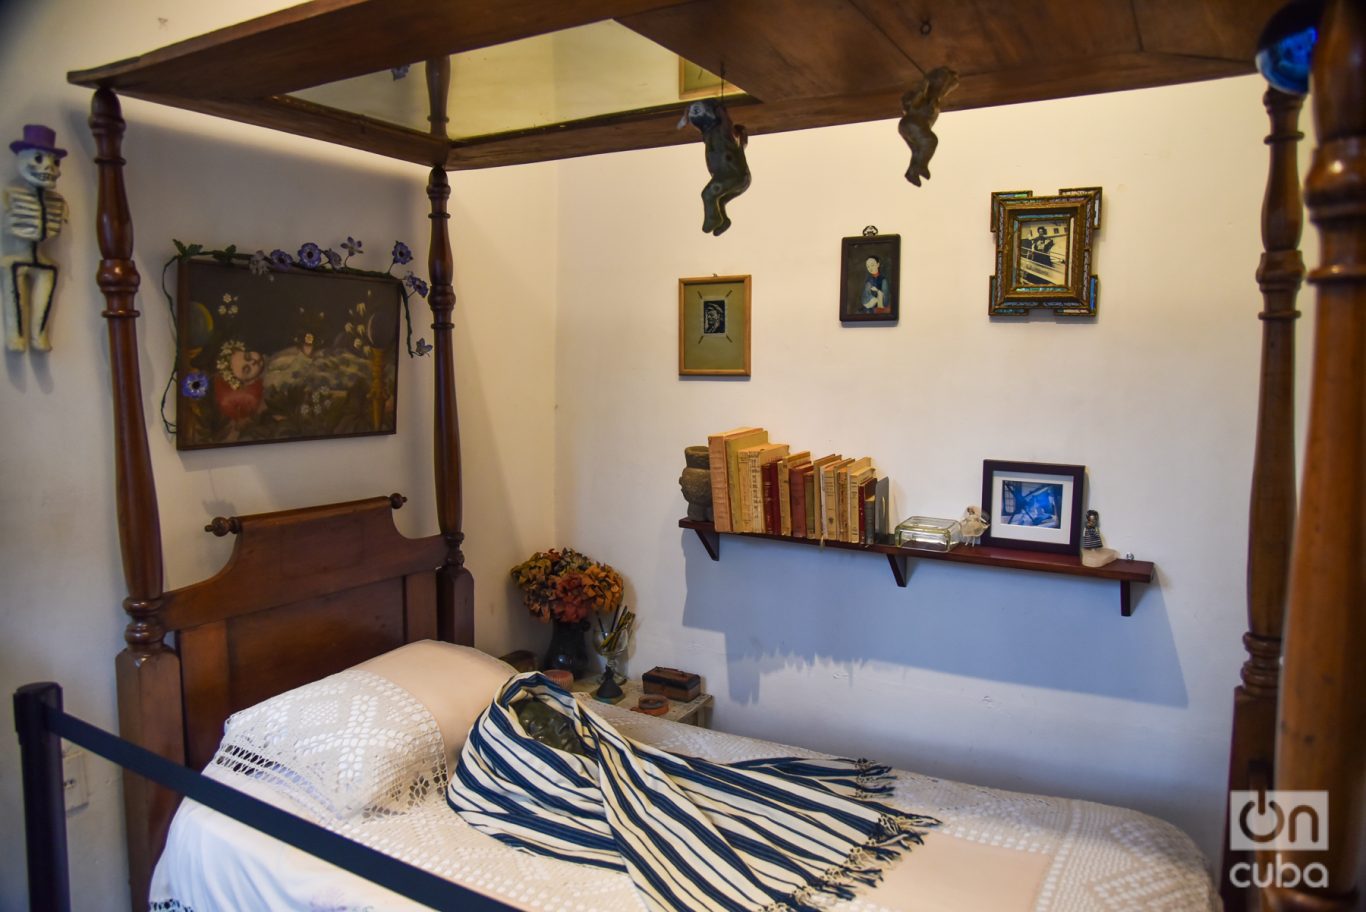  En la habitación conocida como “cuarto de día”, con en el espejo superior en la cama en la que Frida convaleciente pintaba sus autorretratos. Foto: Kaloian.
